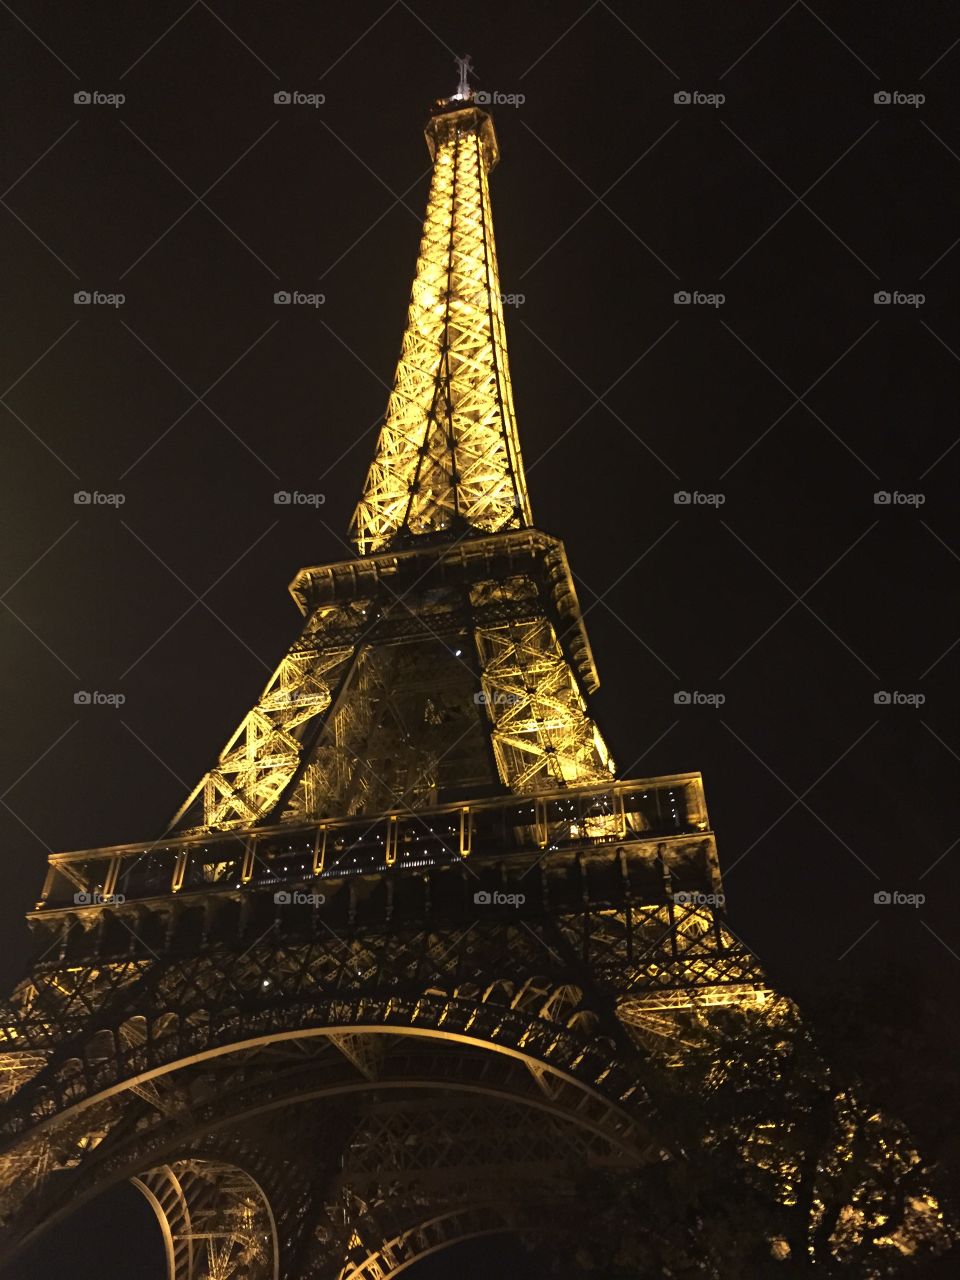 Efel tower in Paris. Efel tower in Paris